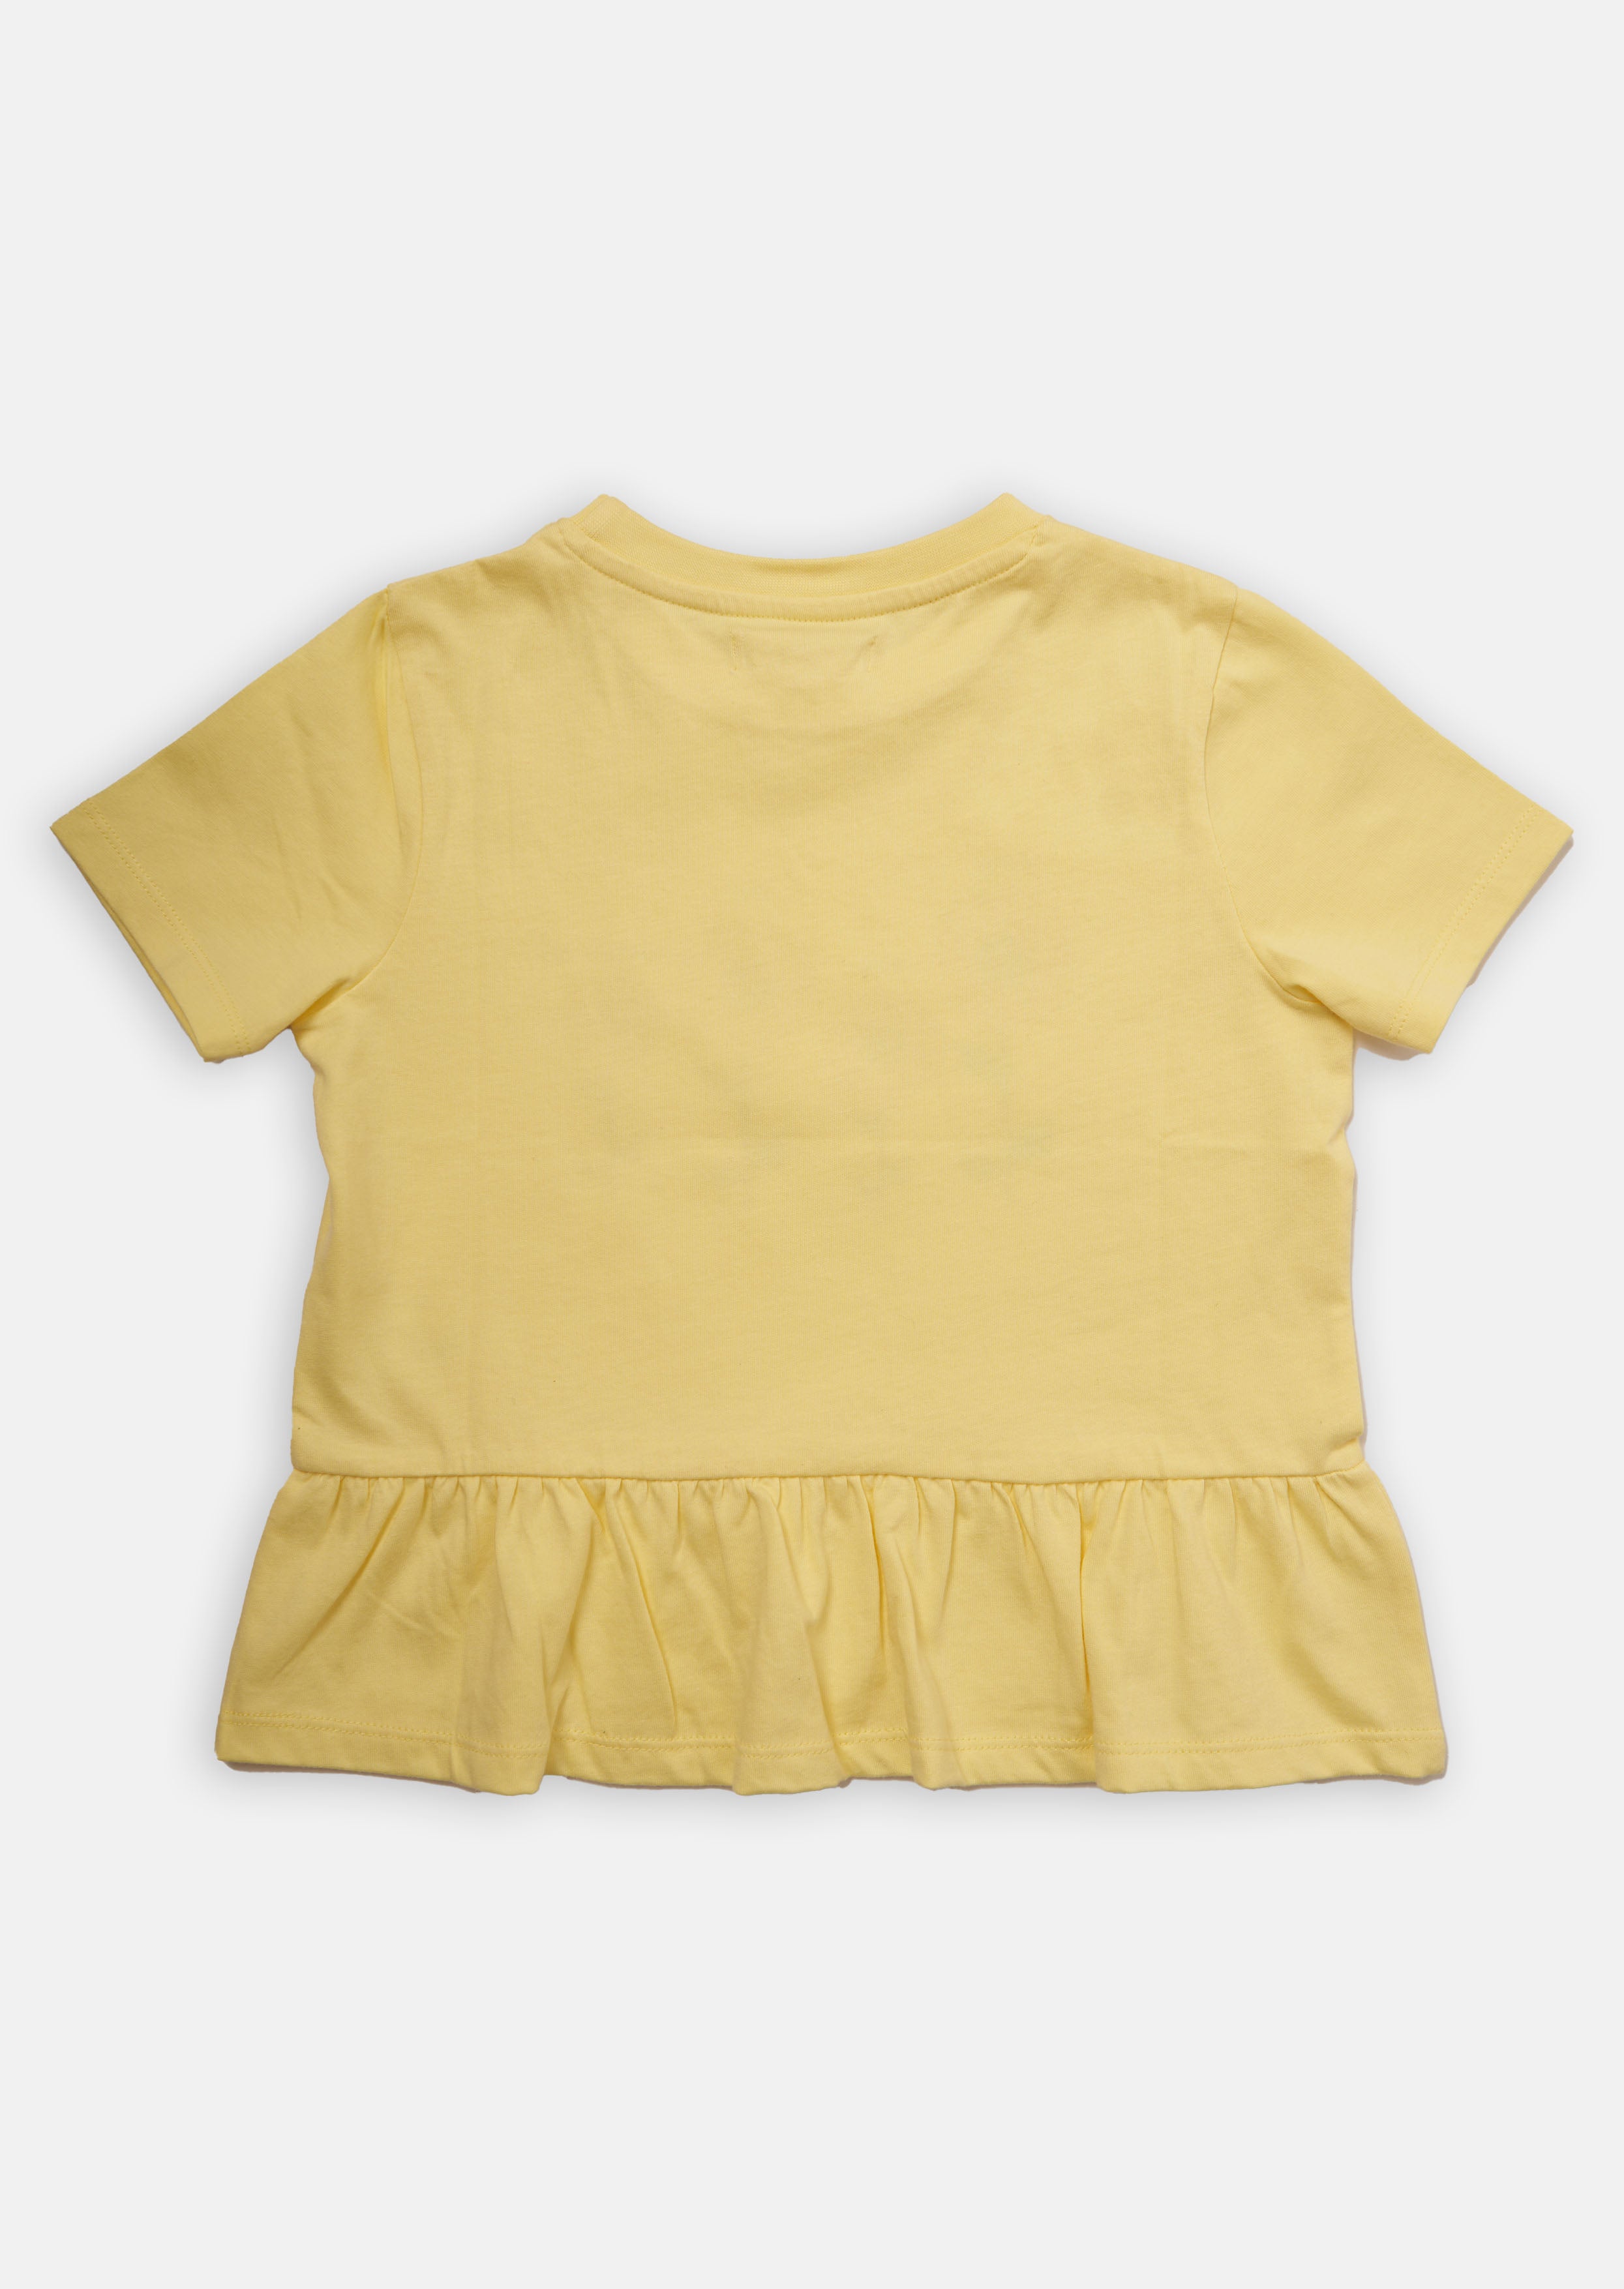 Girls Sunflower Printed Yellow Top